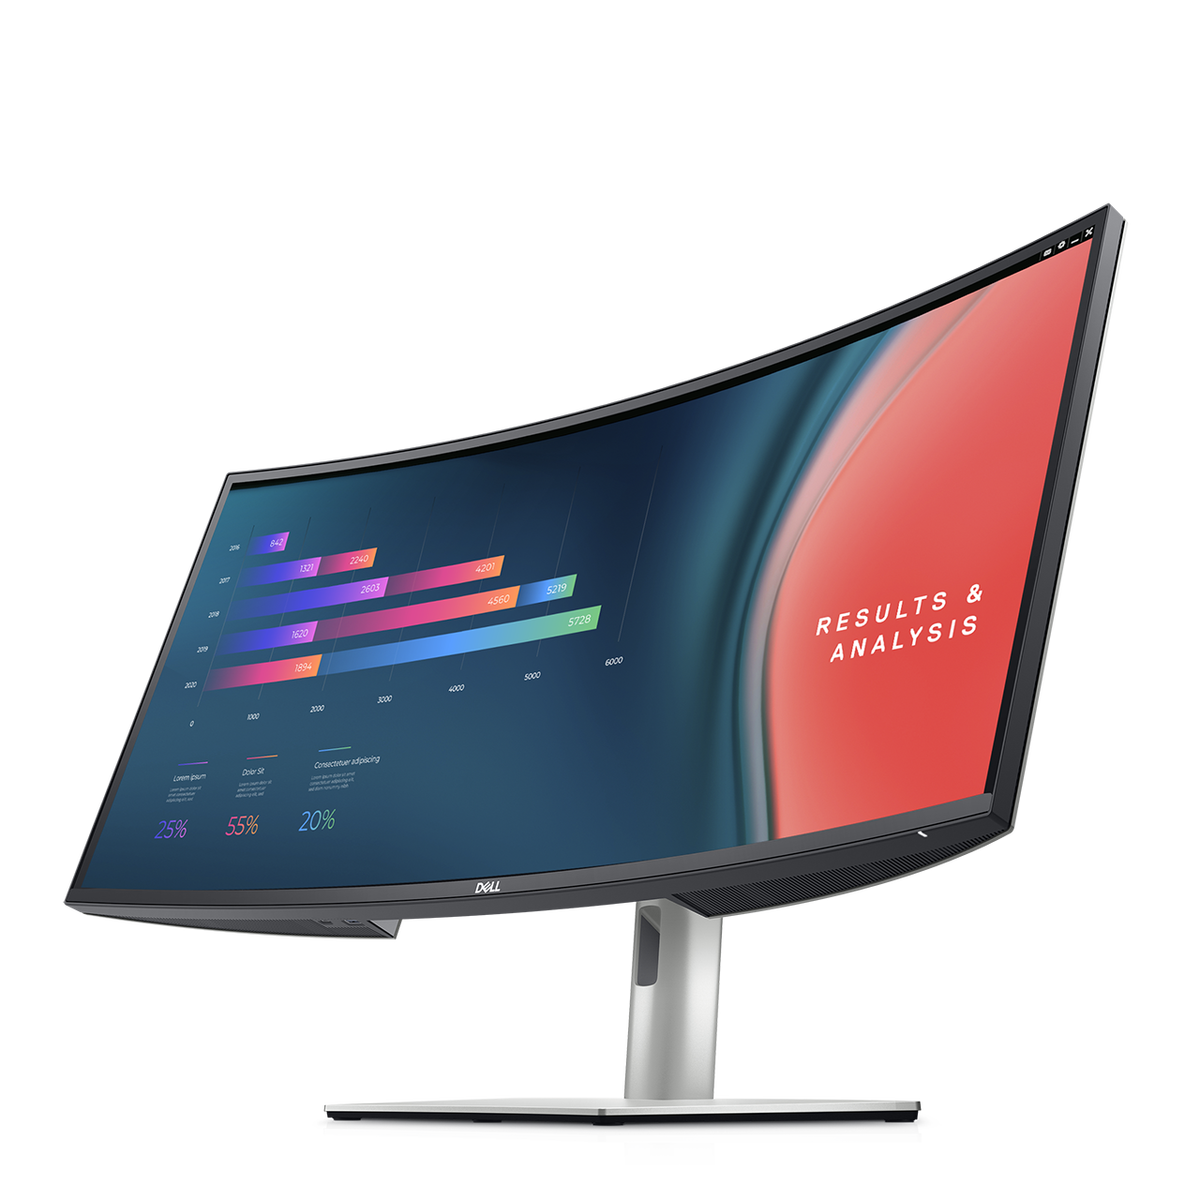 Dell Ultrasharp moniteur écran large image Transparente